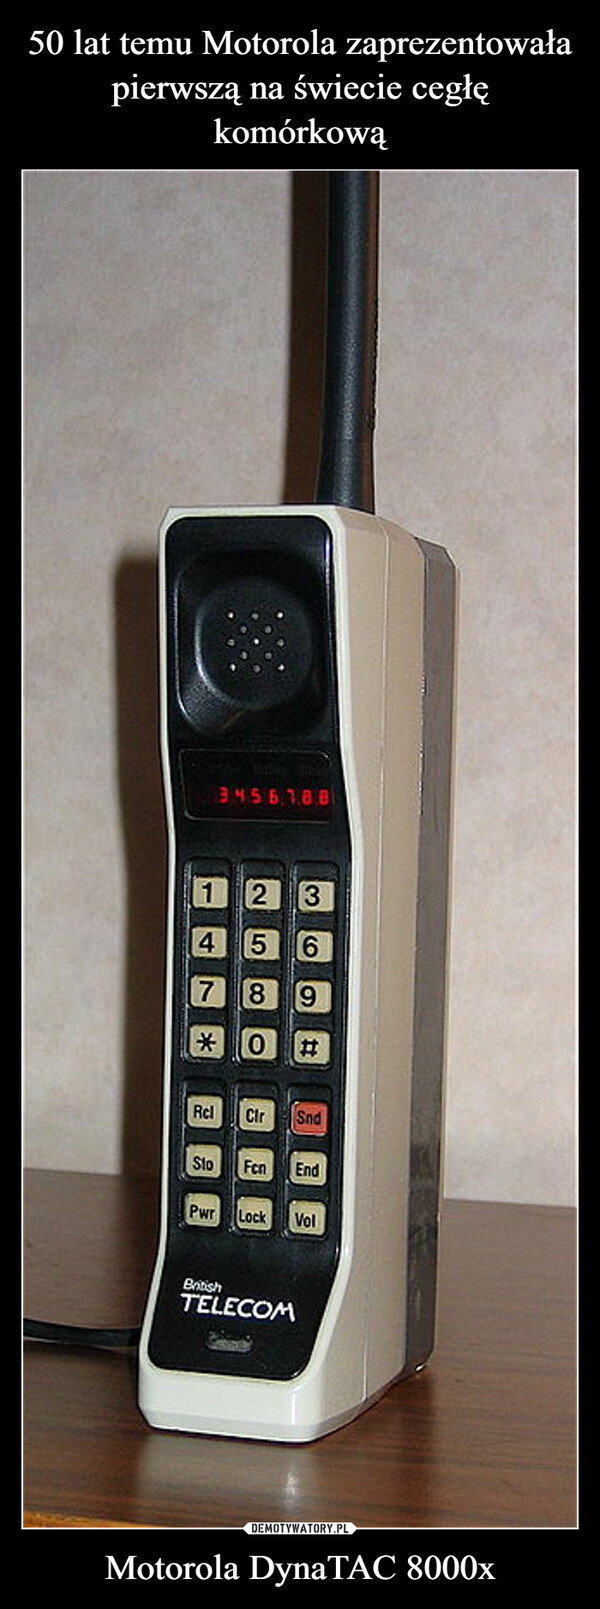 50 lat temu Motorola zaprezentowała
pierwszą na świecie cegłę komórkową Motorola DynaTAC 8000x